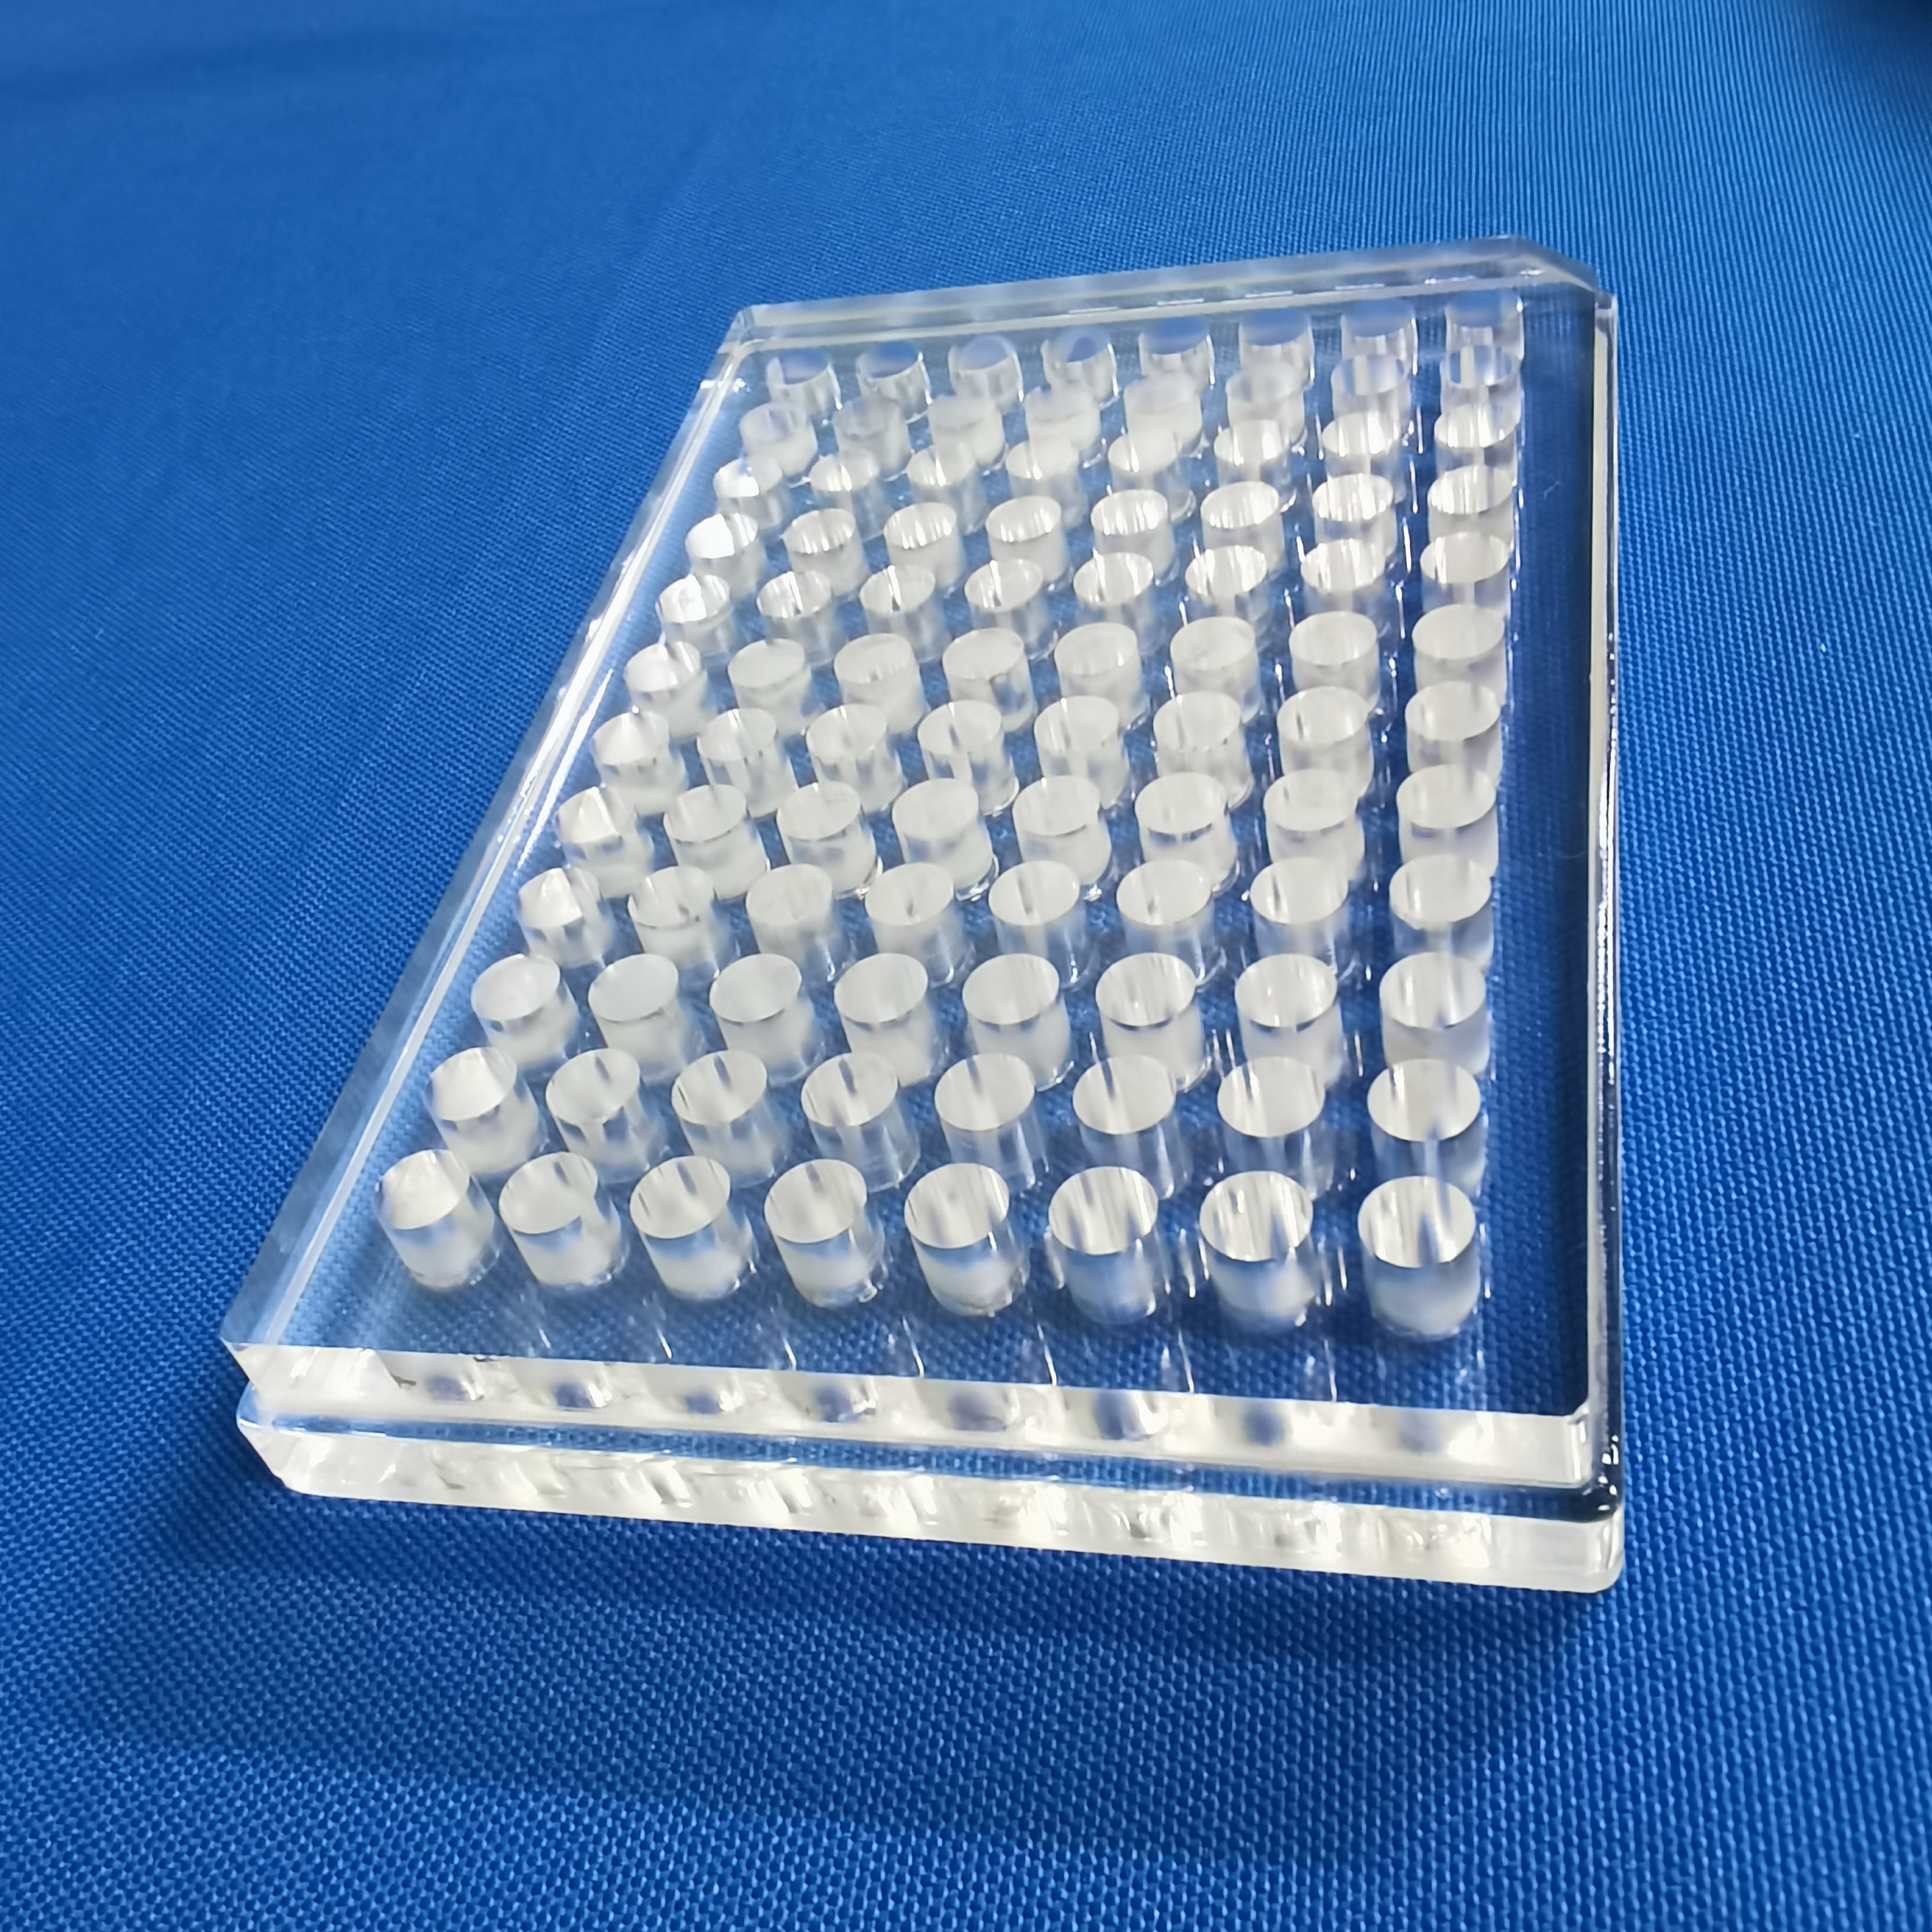 Общи стандартни кварцови стъкла UV 96 плочки с ямки 96 ямки Микро плочи 96 плочи с много ямки НОВО 04